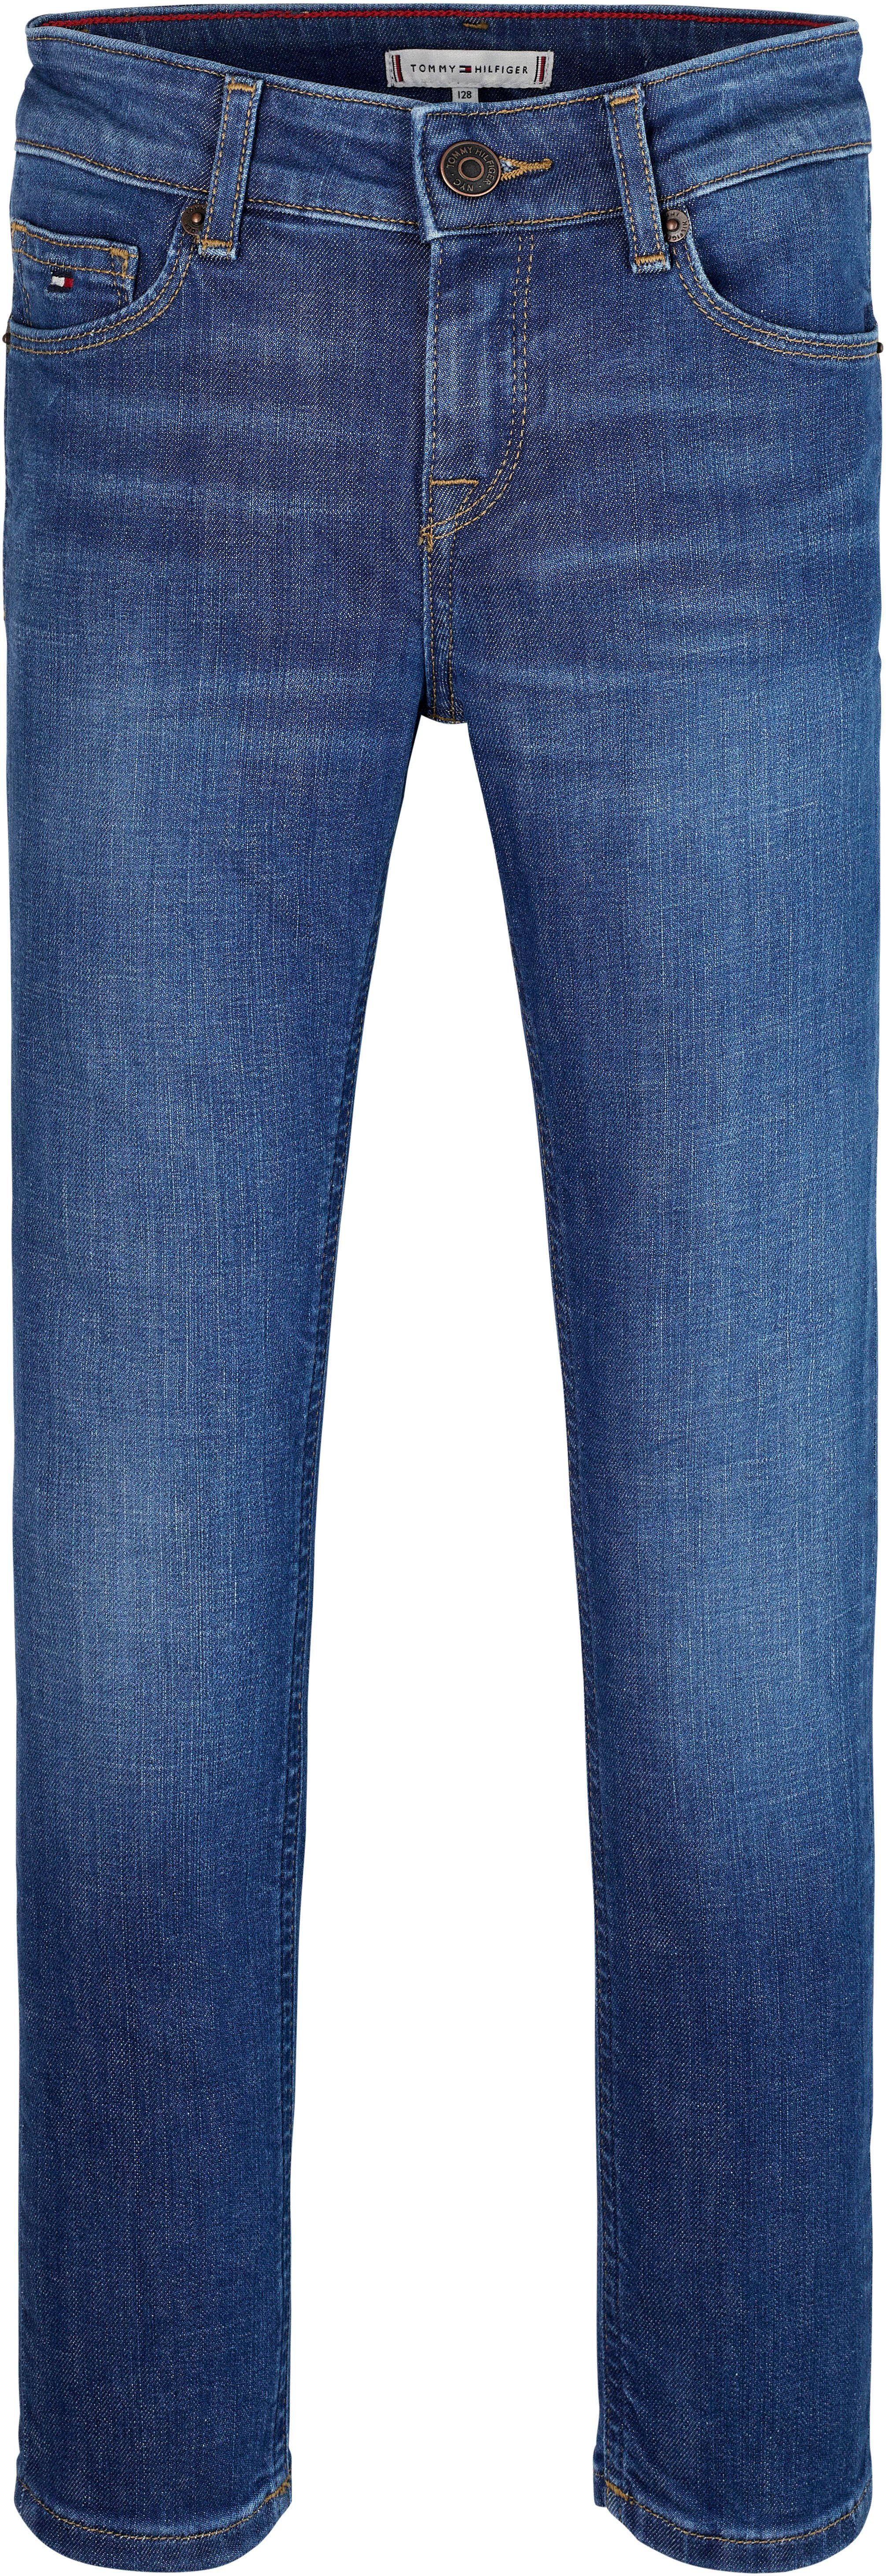 Tommy Hilfiger Slim fit jeans NORA DARK WASH in blauwe wassing